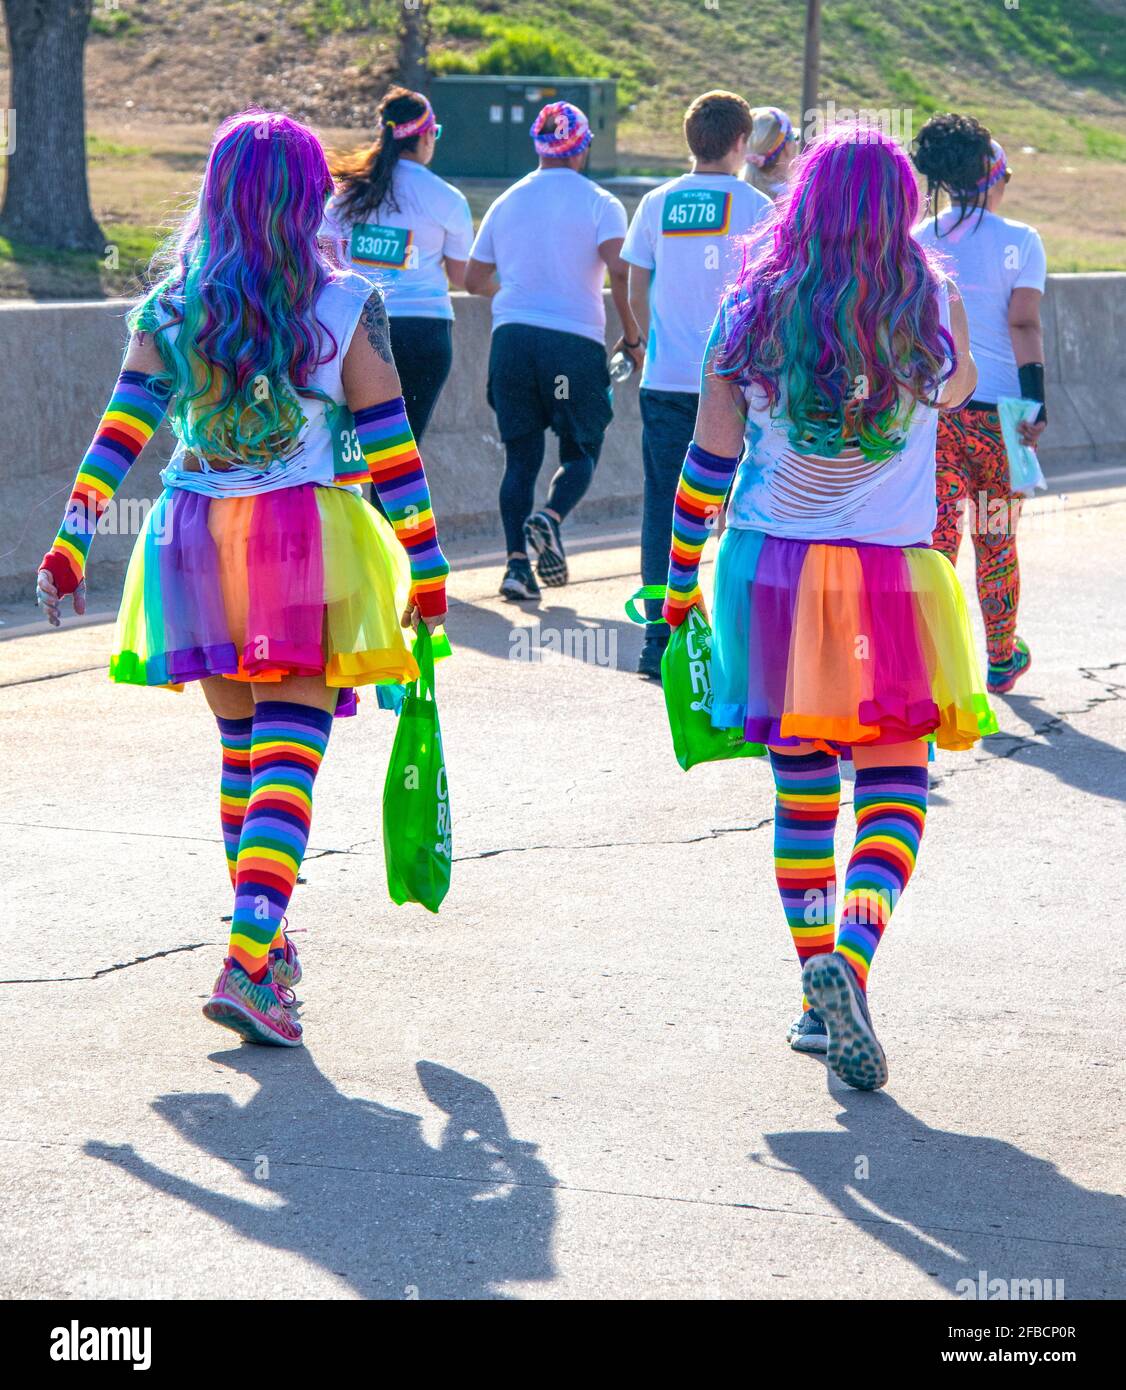 4-6-2019 Tulsa - zwei Frauen, die am Tulsa Color Run teilnehmen, gehen mit langen, regenbogenfarbenen Haaren, Regenbogenstreifen-Tutus und Socken von der Kamera weg Stockfoto